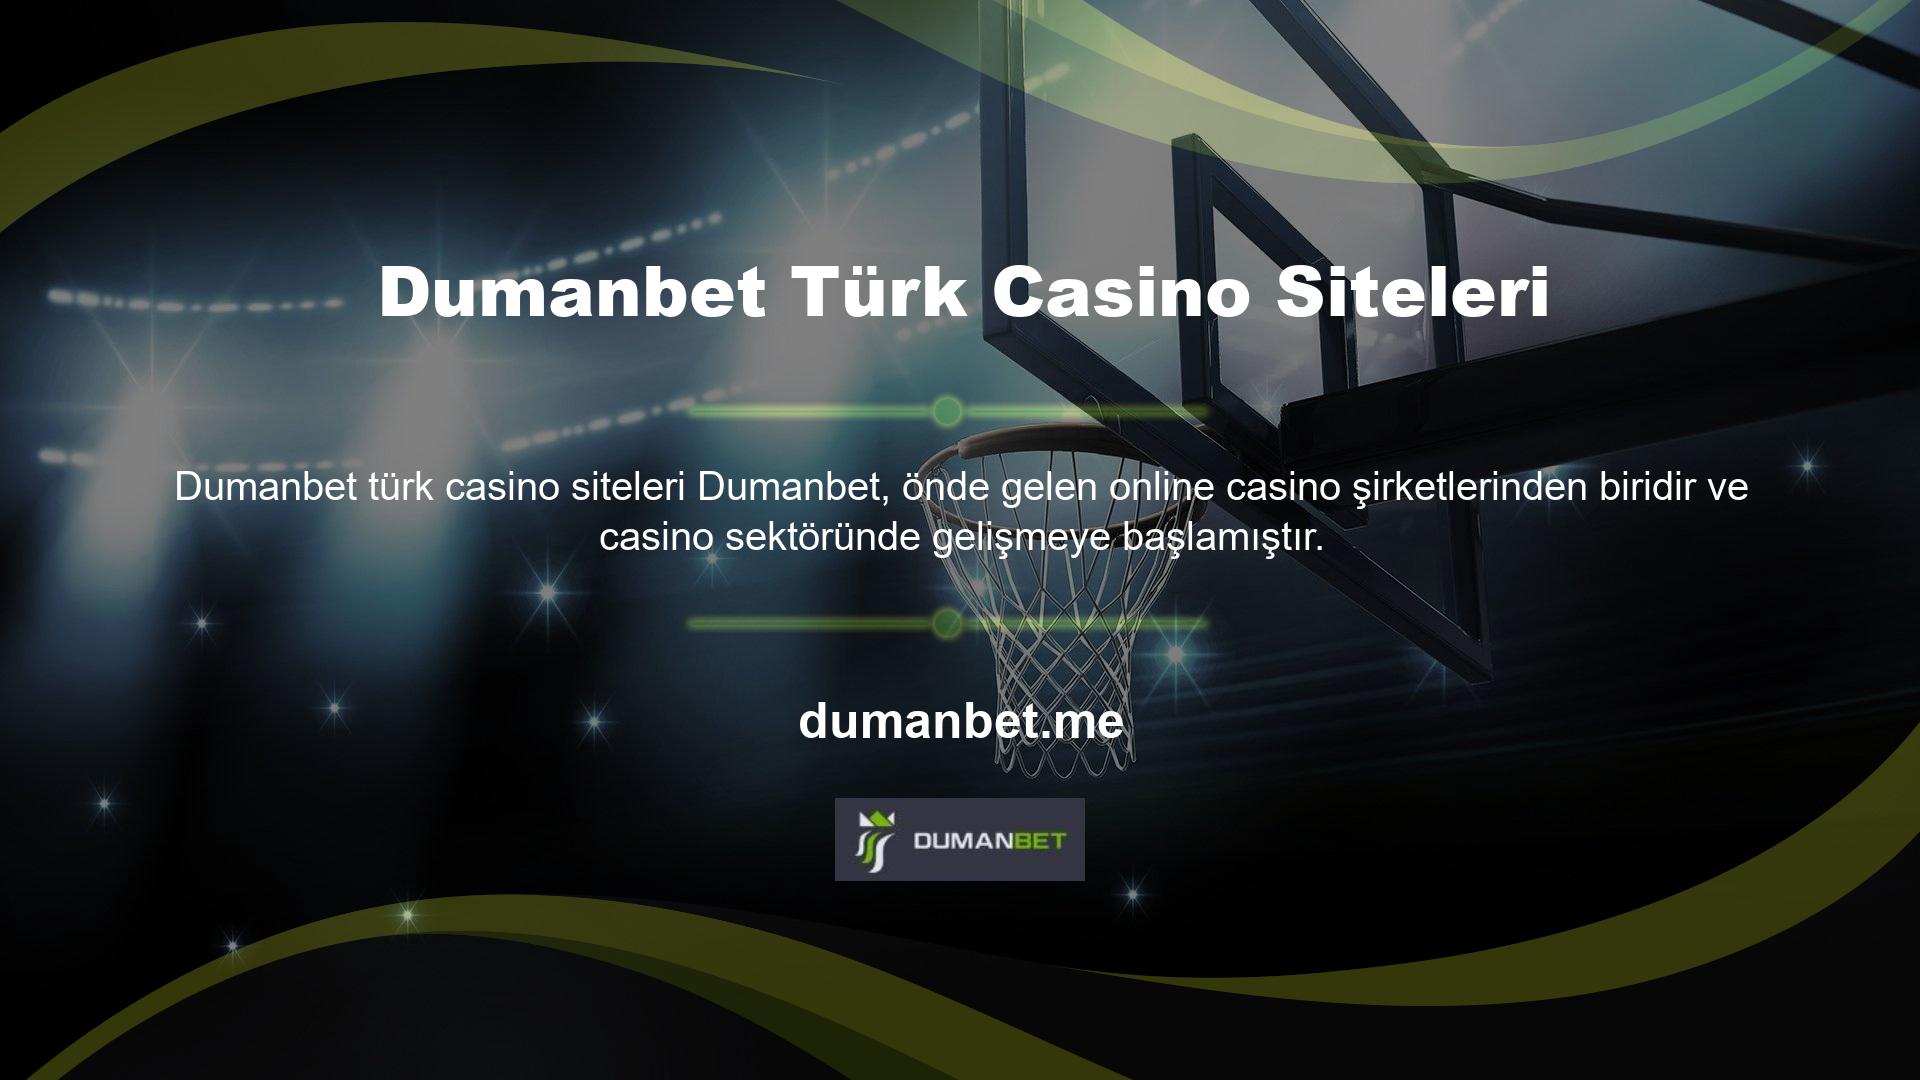 Dumanbet, Türkçe versiyonun eksikliklerine rağmen oyunların kalitesini dengelemek için yakın zamanda casino web sitesini Türkçe'ye çevirdi